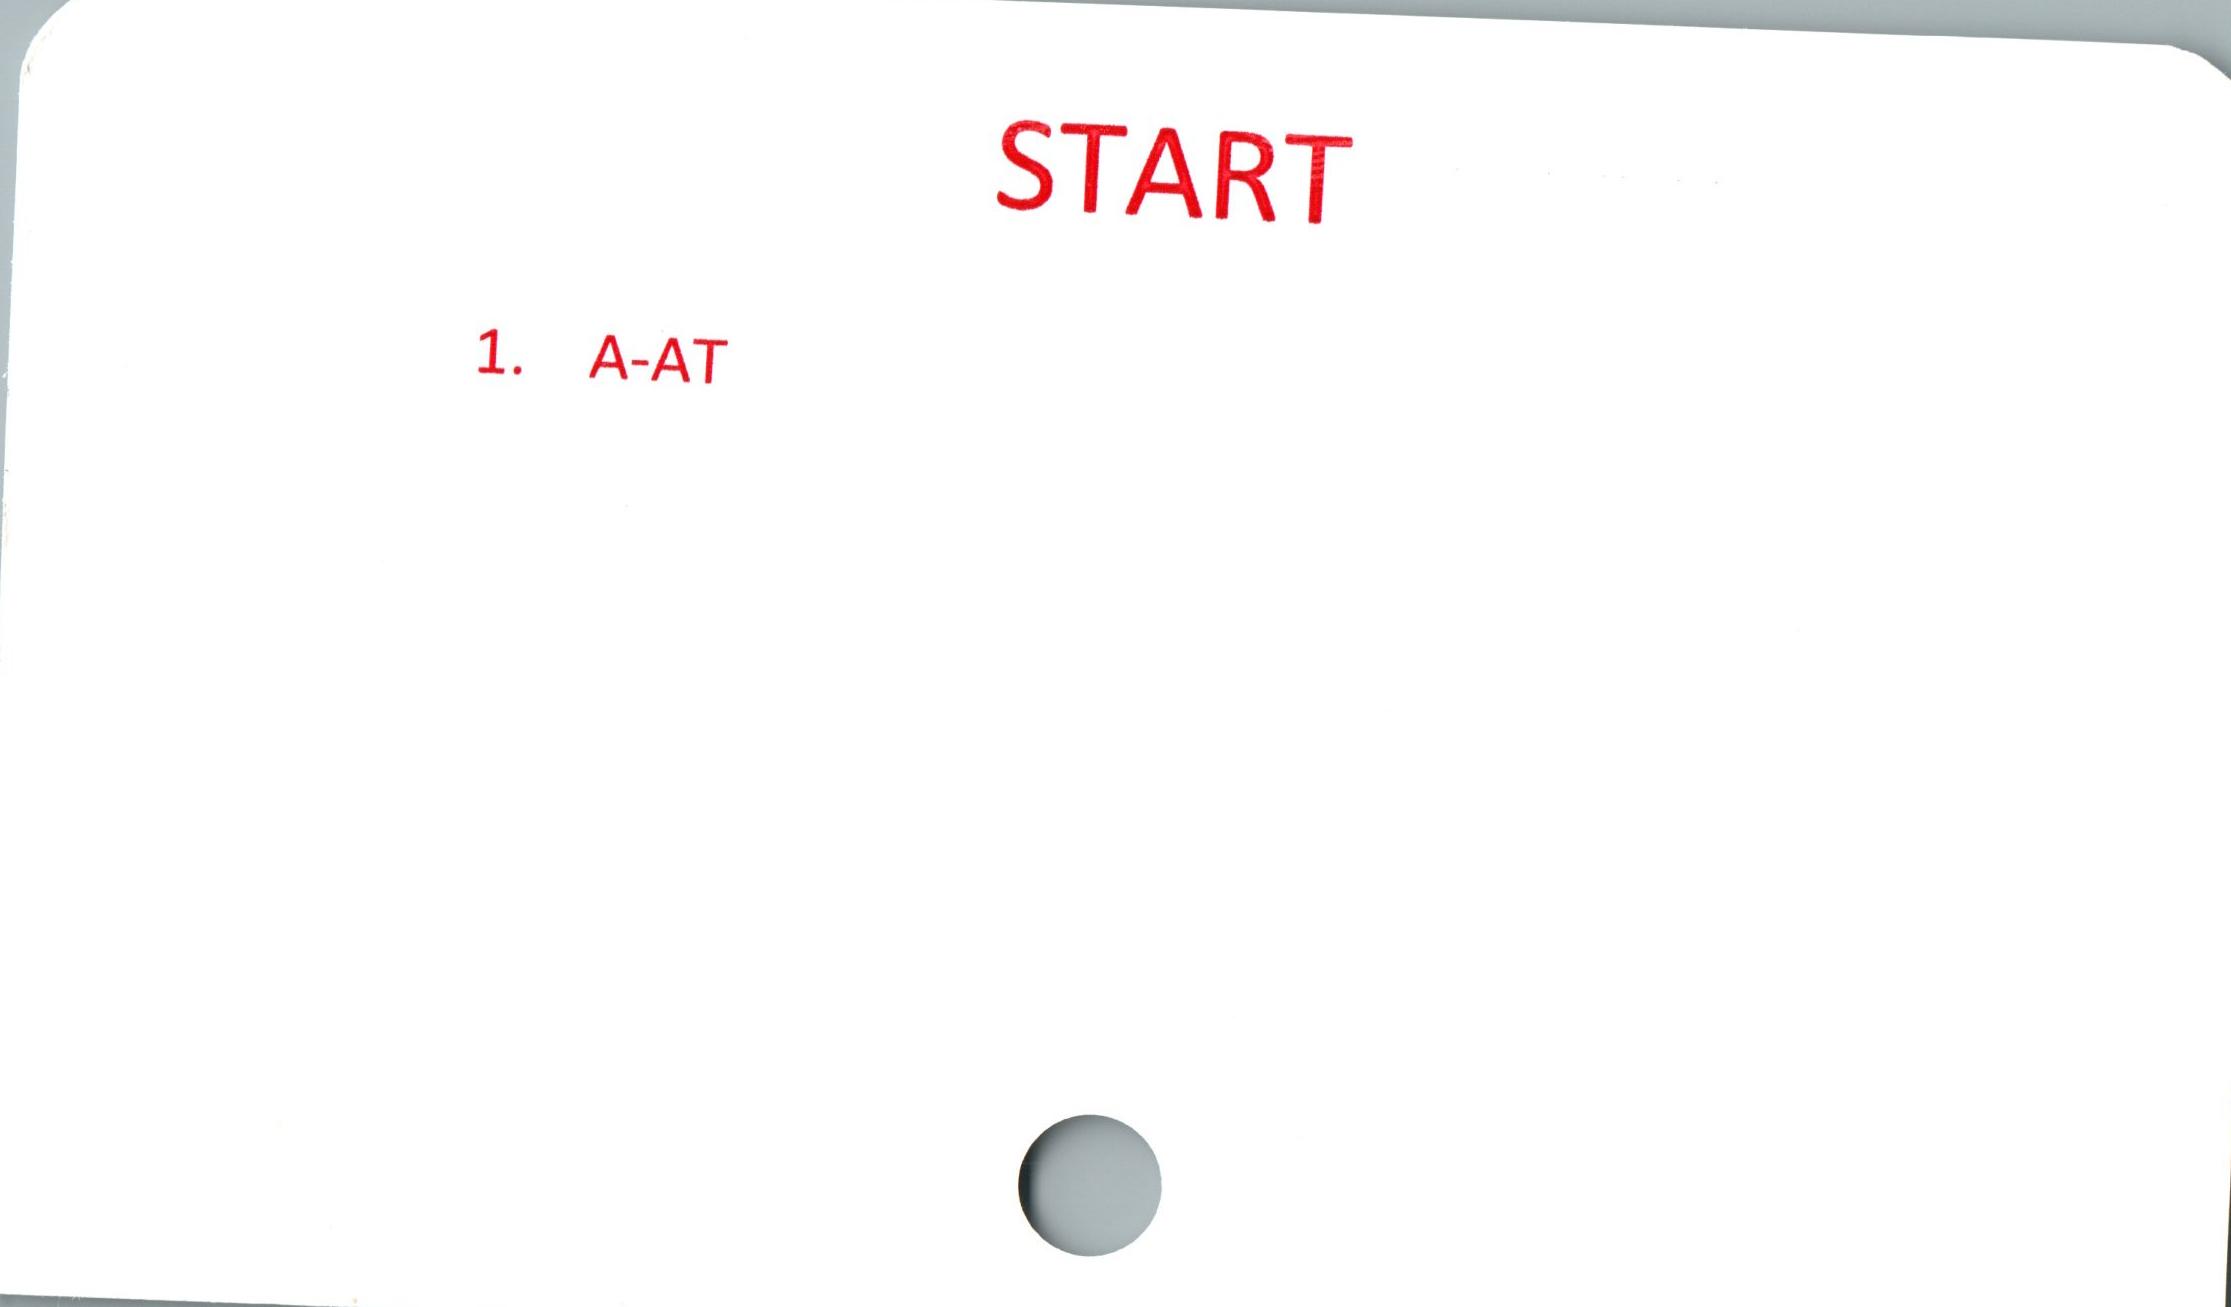 START START

﻿1. A-AT